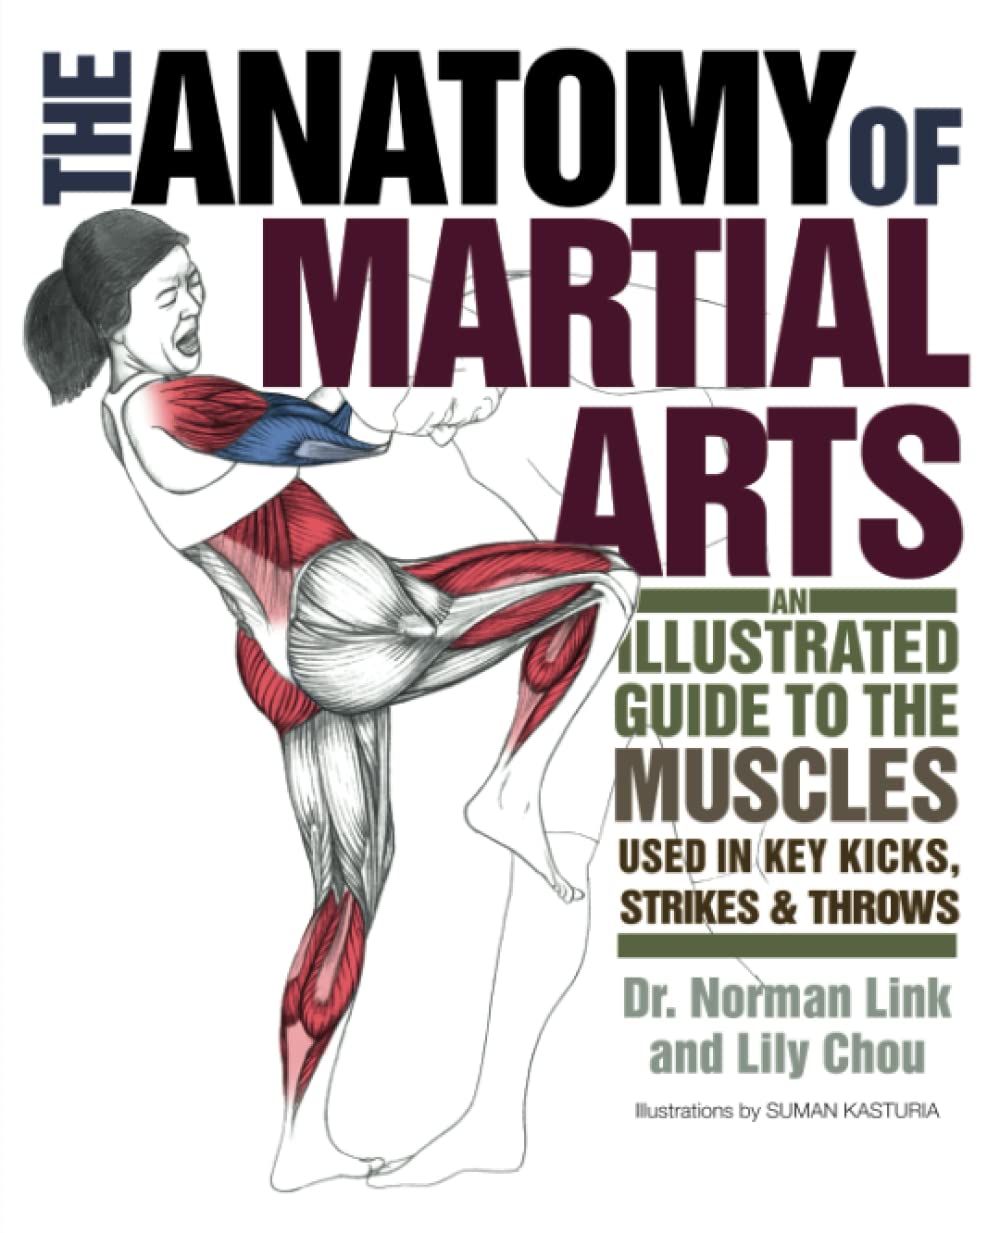 武道の解剖学: 打撃、蹴り、投げの各動作に使用される筋肉の図解ガイド (中古)